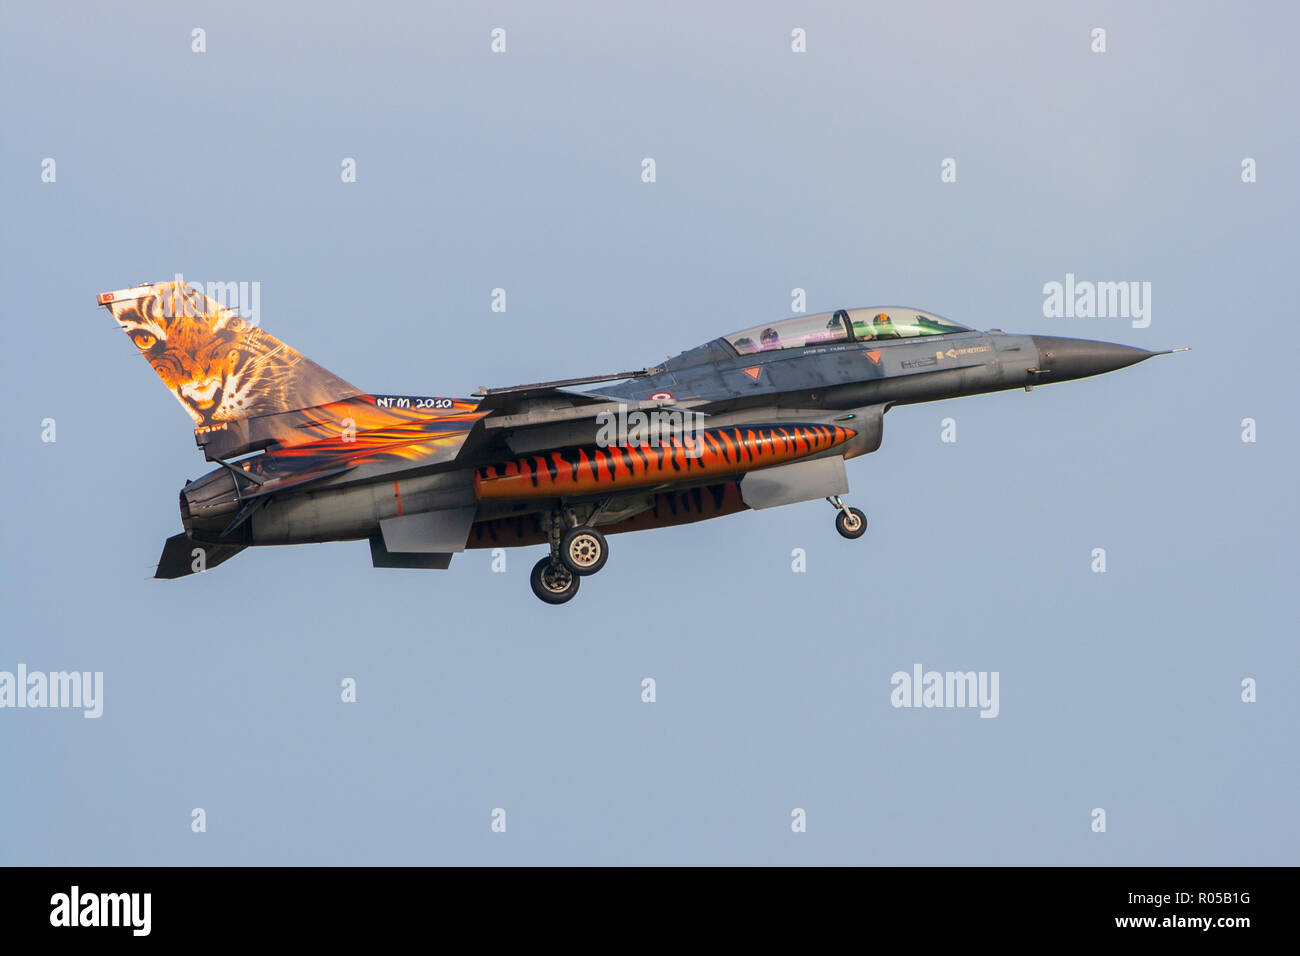 VOLKEL, les Pays-Bas - Oct 4, 2010 : de l'air turque des chasseurs F-16 jet avec une queue spéciale tigermeet peint en approche finale. Banque D'Images